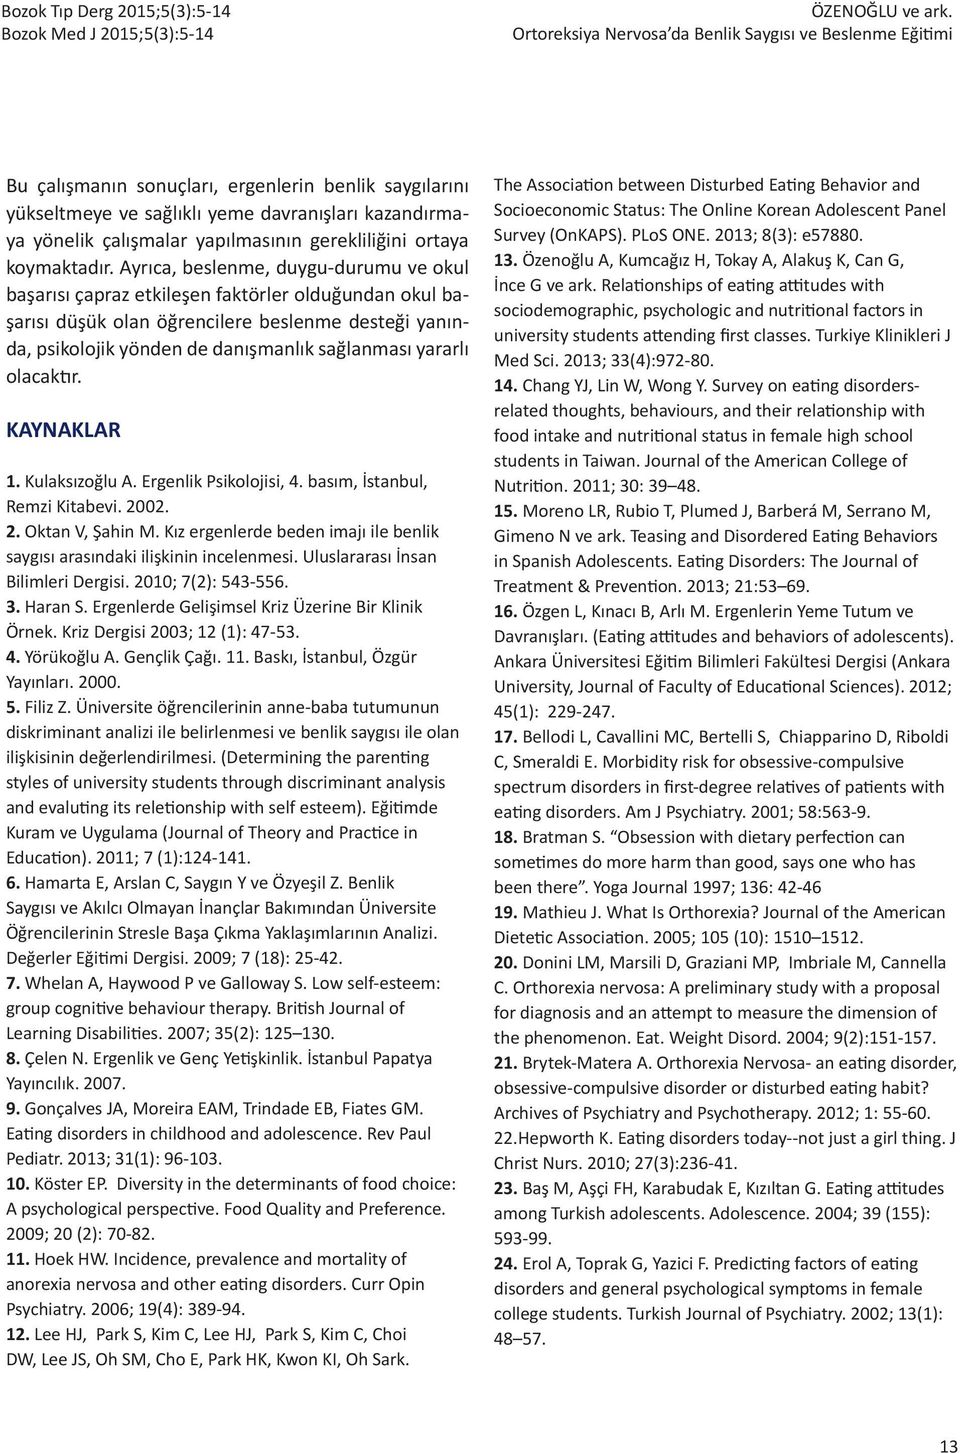 yararlı olacaktır. KAYNAKLAR 1. Kulaksızoğlu A. Ergenlik Psikolojisi, 4. basım, İstanbul, Remzi Kitabevi. 2002. 2. Oktan V, Şahin M.